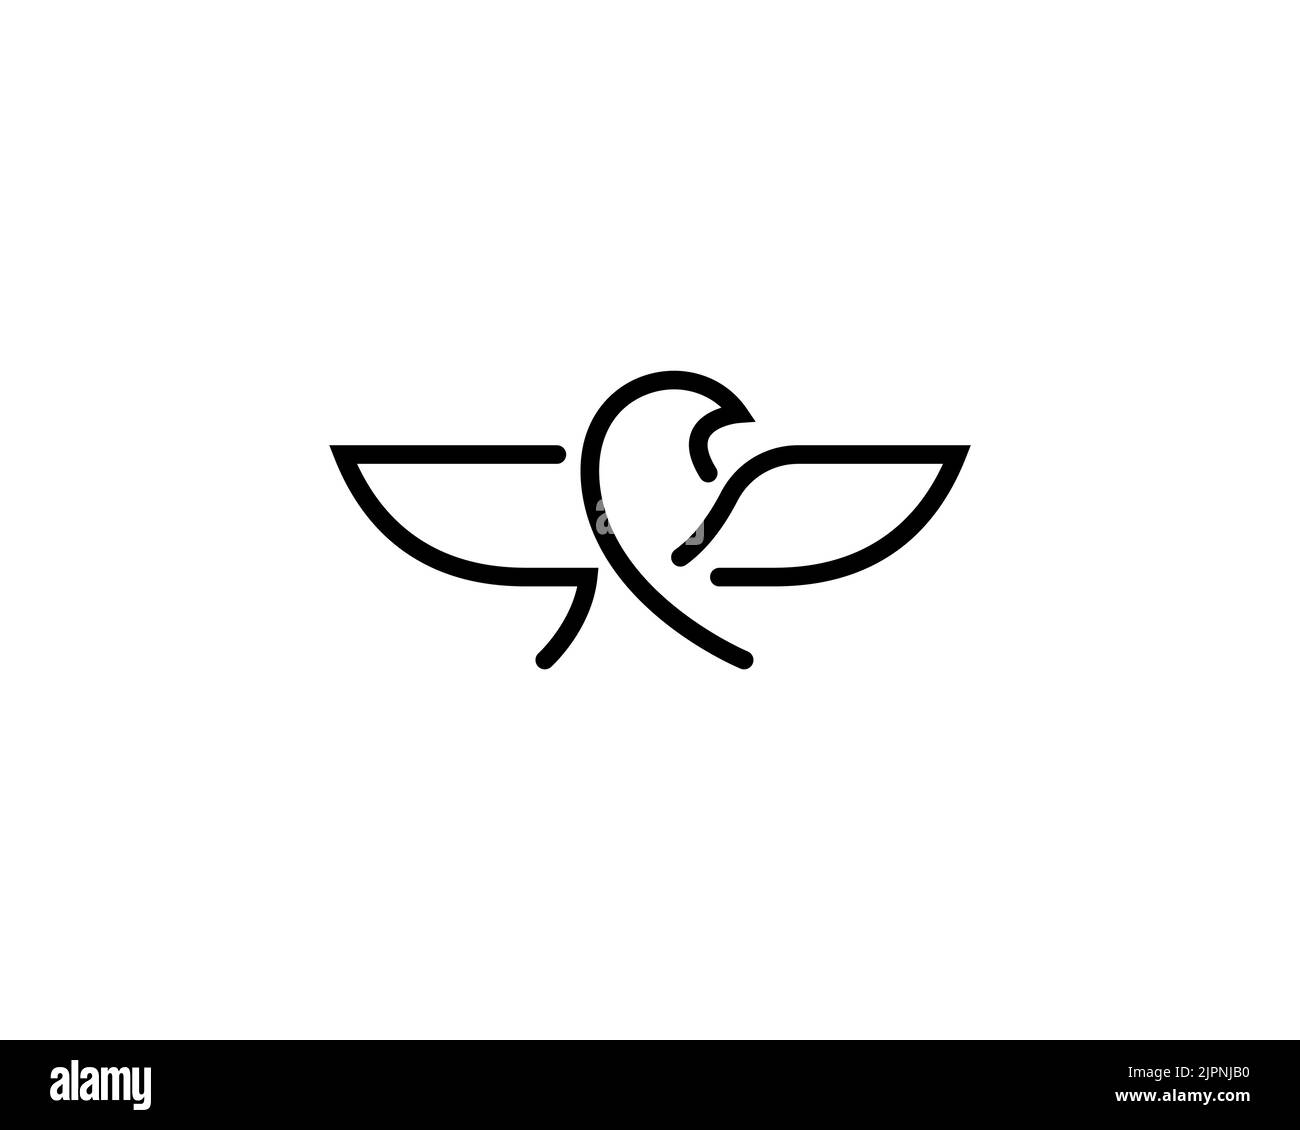 Un logo minimaliste noir représentant un aigle qui étend ses ailes isolées sur un fond blanc Illustration de Vecteur